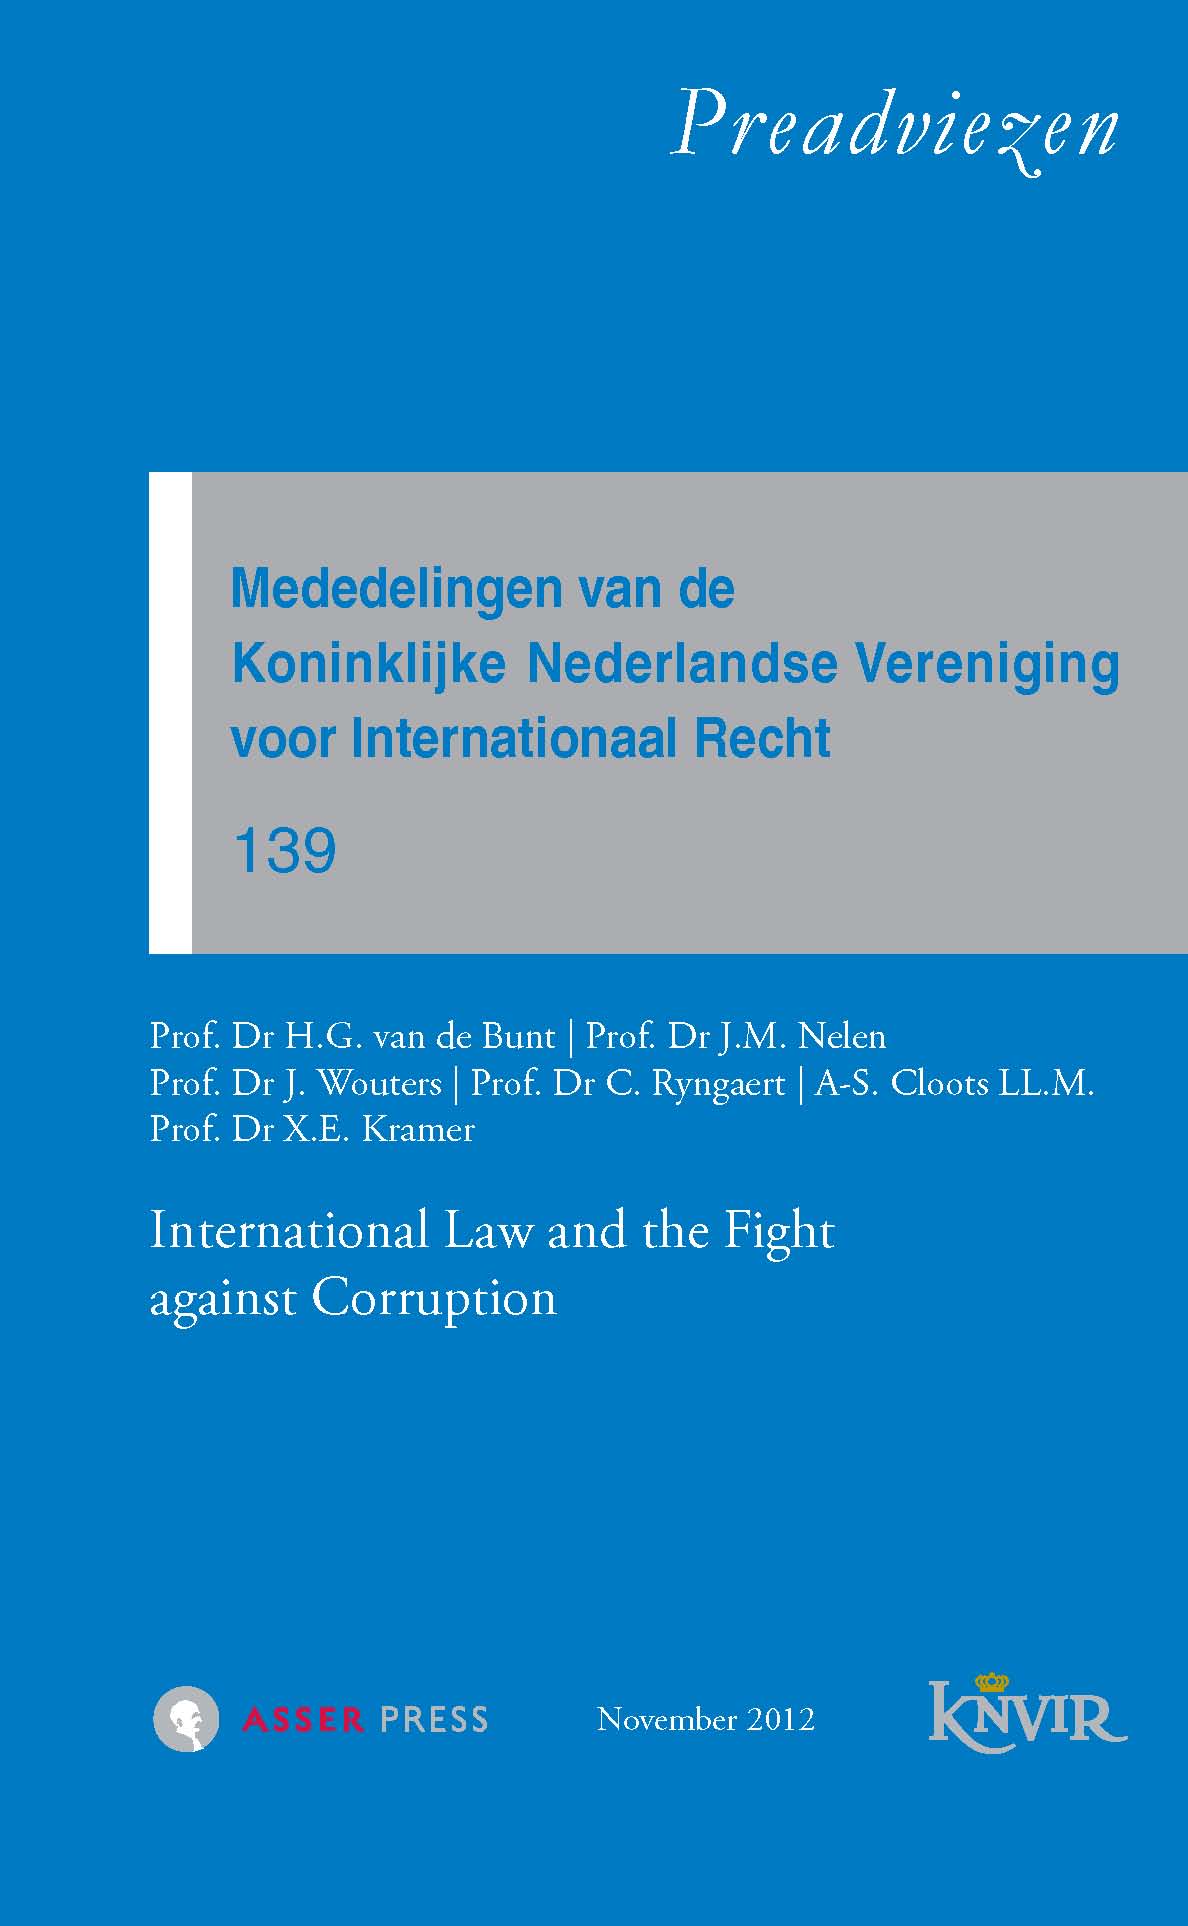 Mededelingen van de Koninklijke Nederlandse Vereniging voor Internationaal Recht – Nr. 139 – International Law and the Fight against Corruption